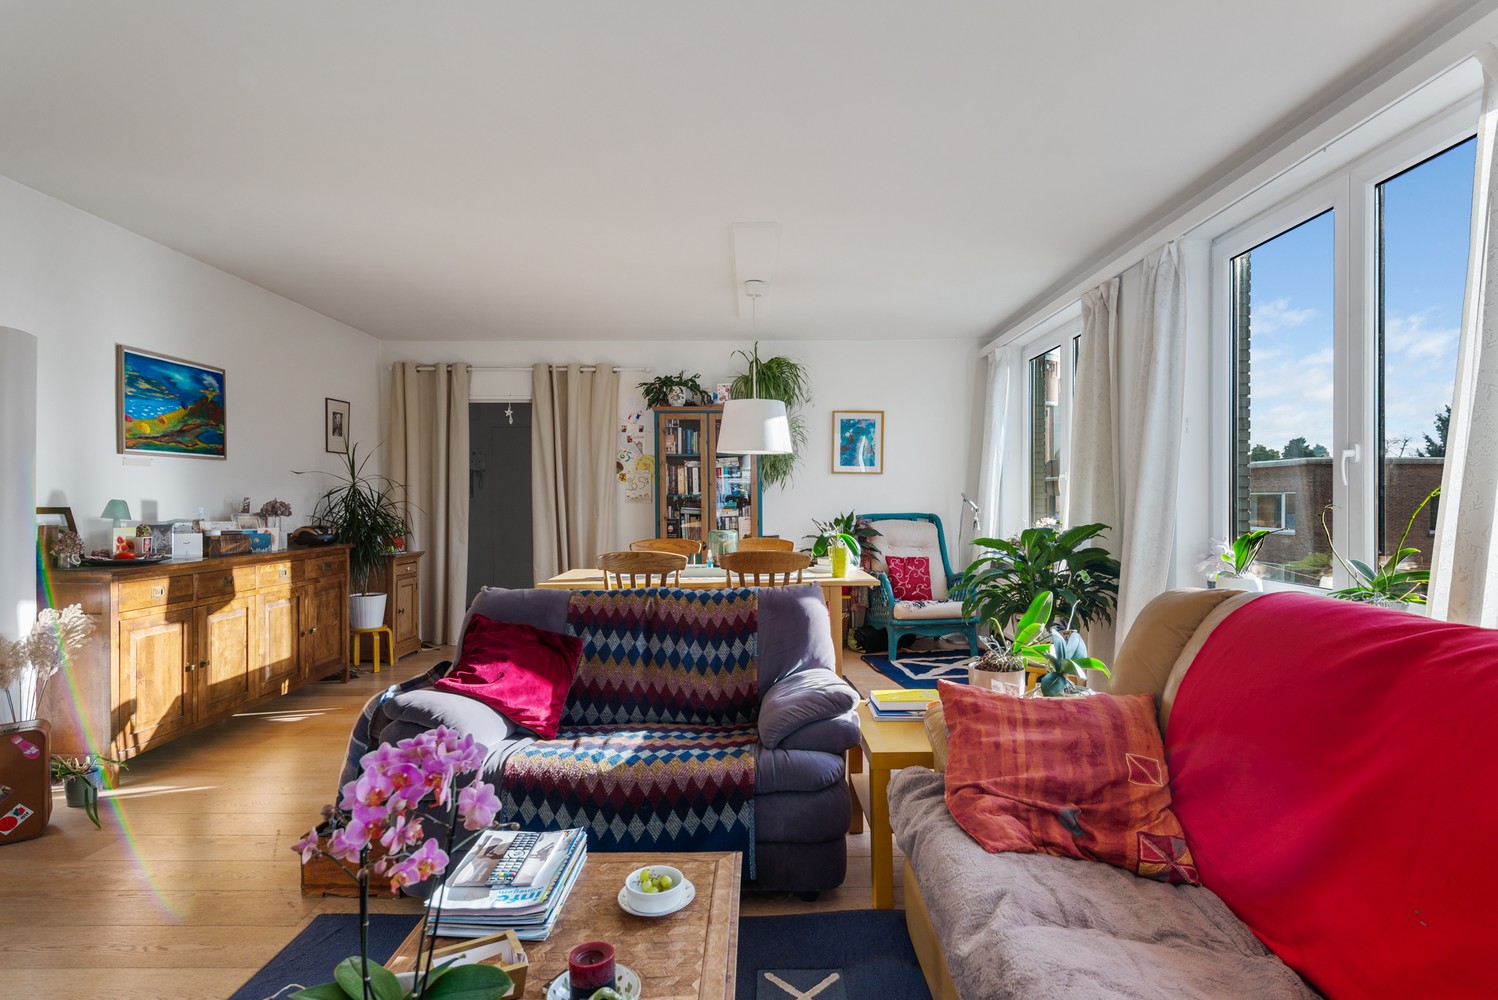 Appartement met drie slaapkamers te huur in Wijnegem afbeelding 4